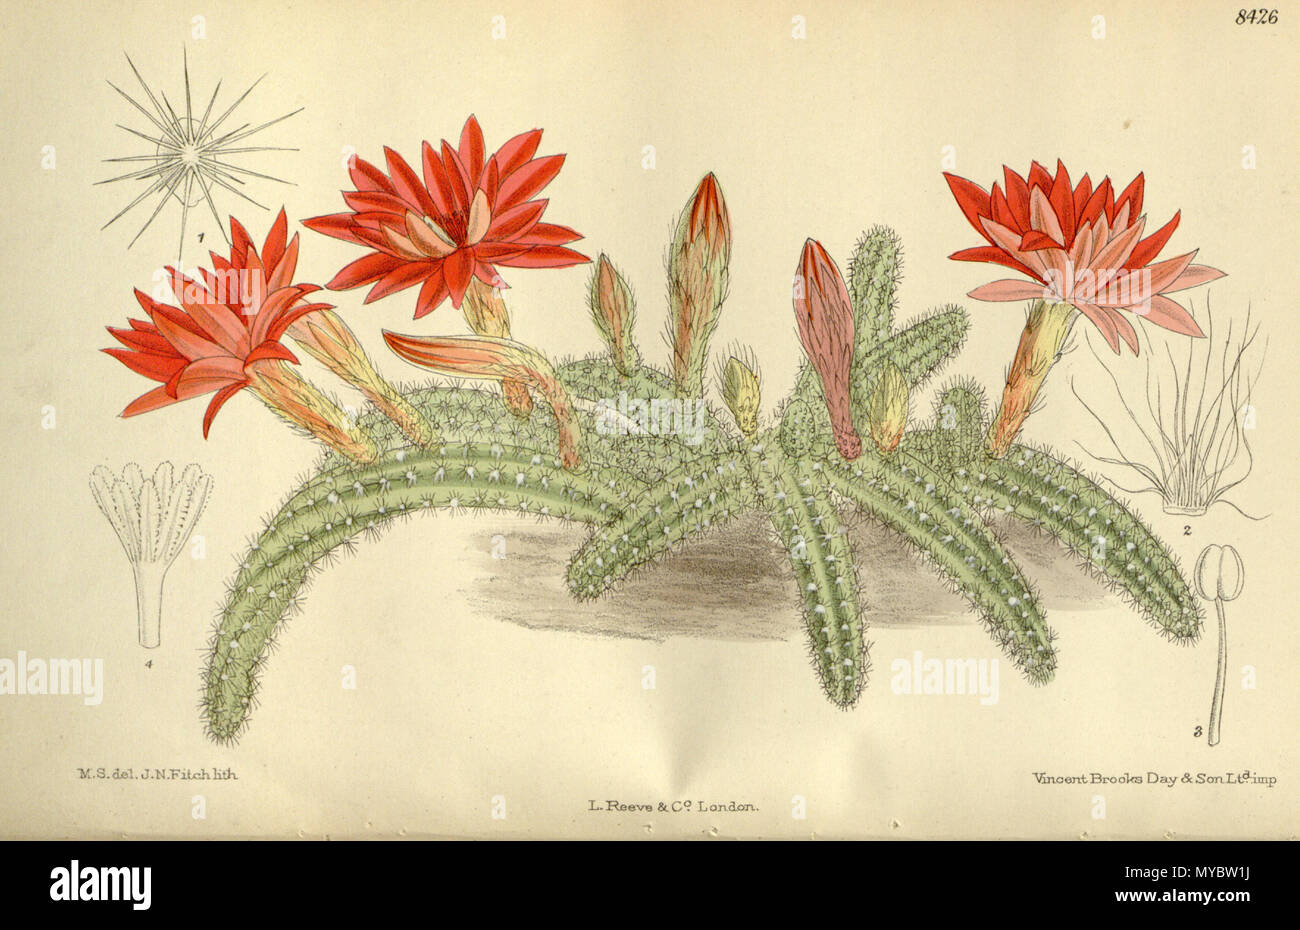 . Cereus silvestrii (= Echinopsis chamaecereus), Cactaceae . 1912. M.S. del, J.N.Fitch, lith. 103 Cereus silvestrii 138-8426 Stock Photo